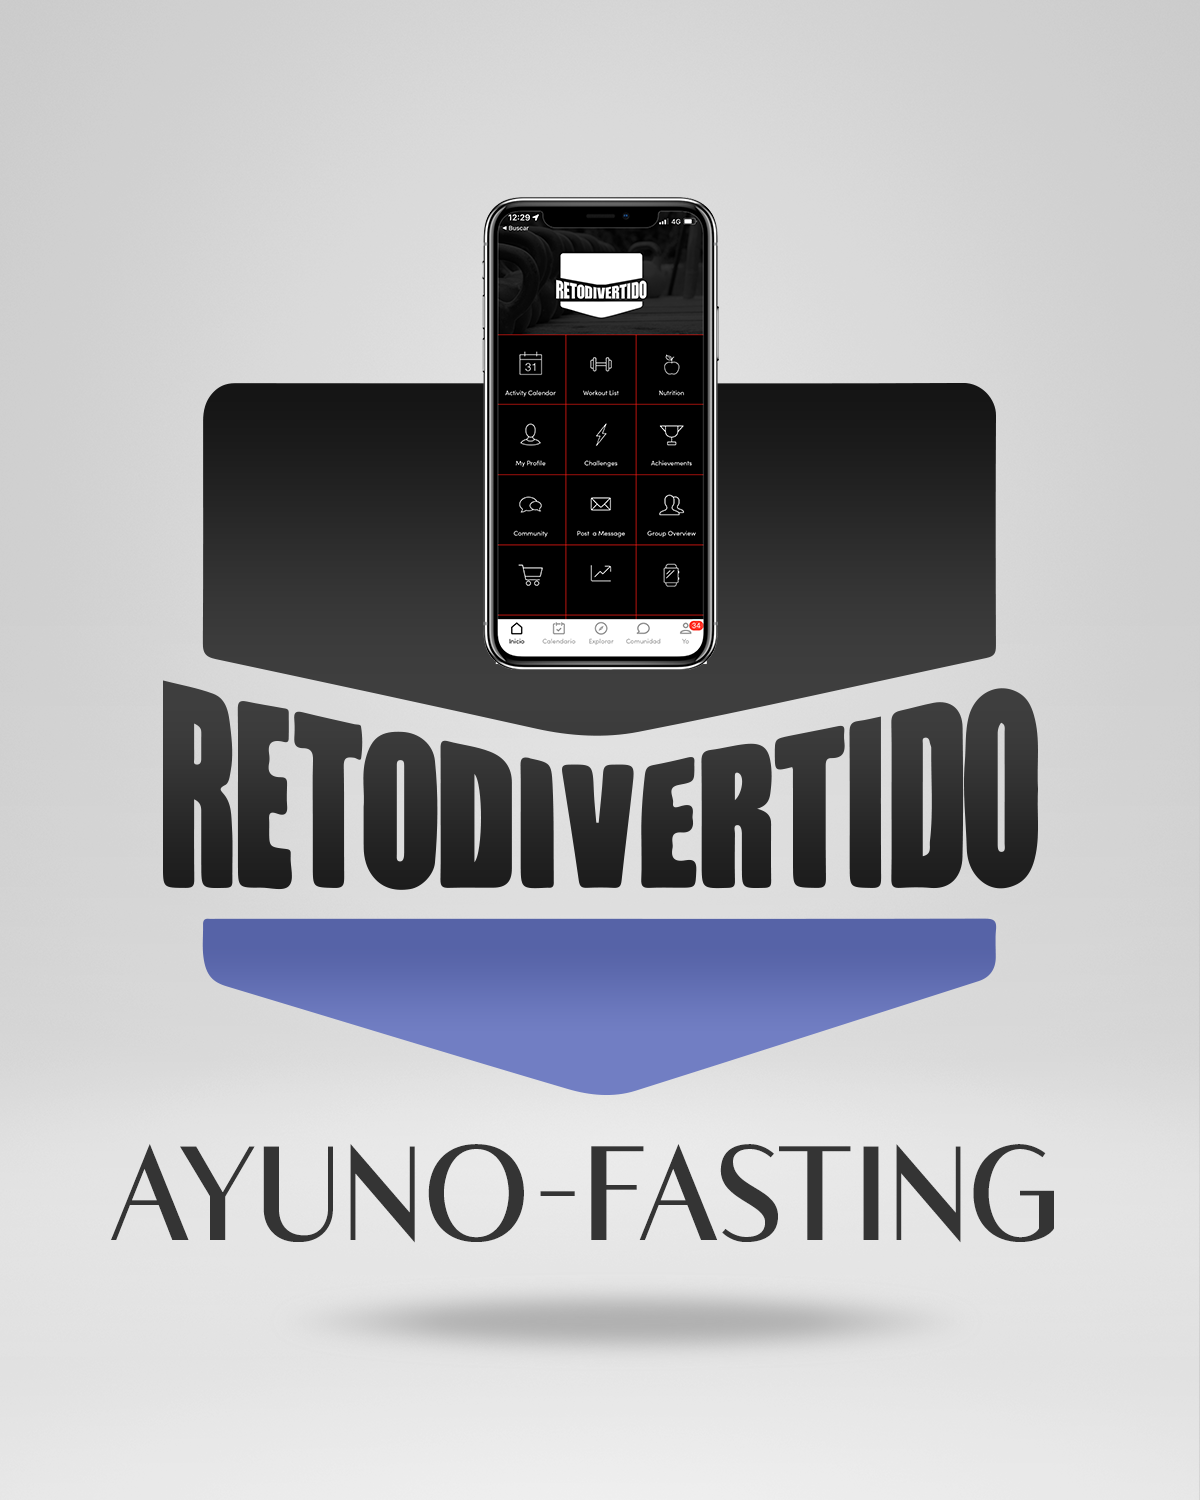 RETO DIVERTIDO AYUNO - FASTING